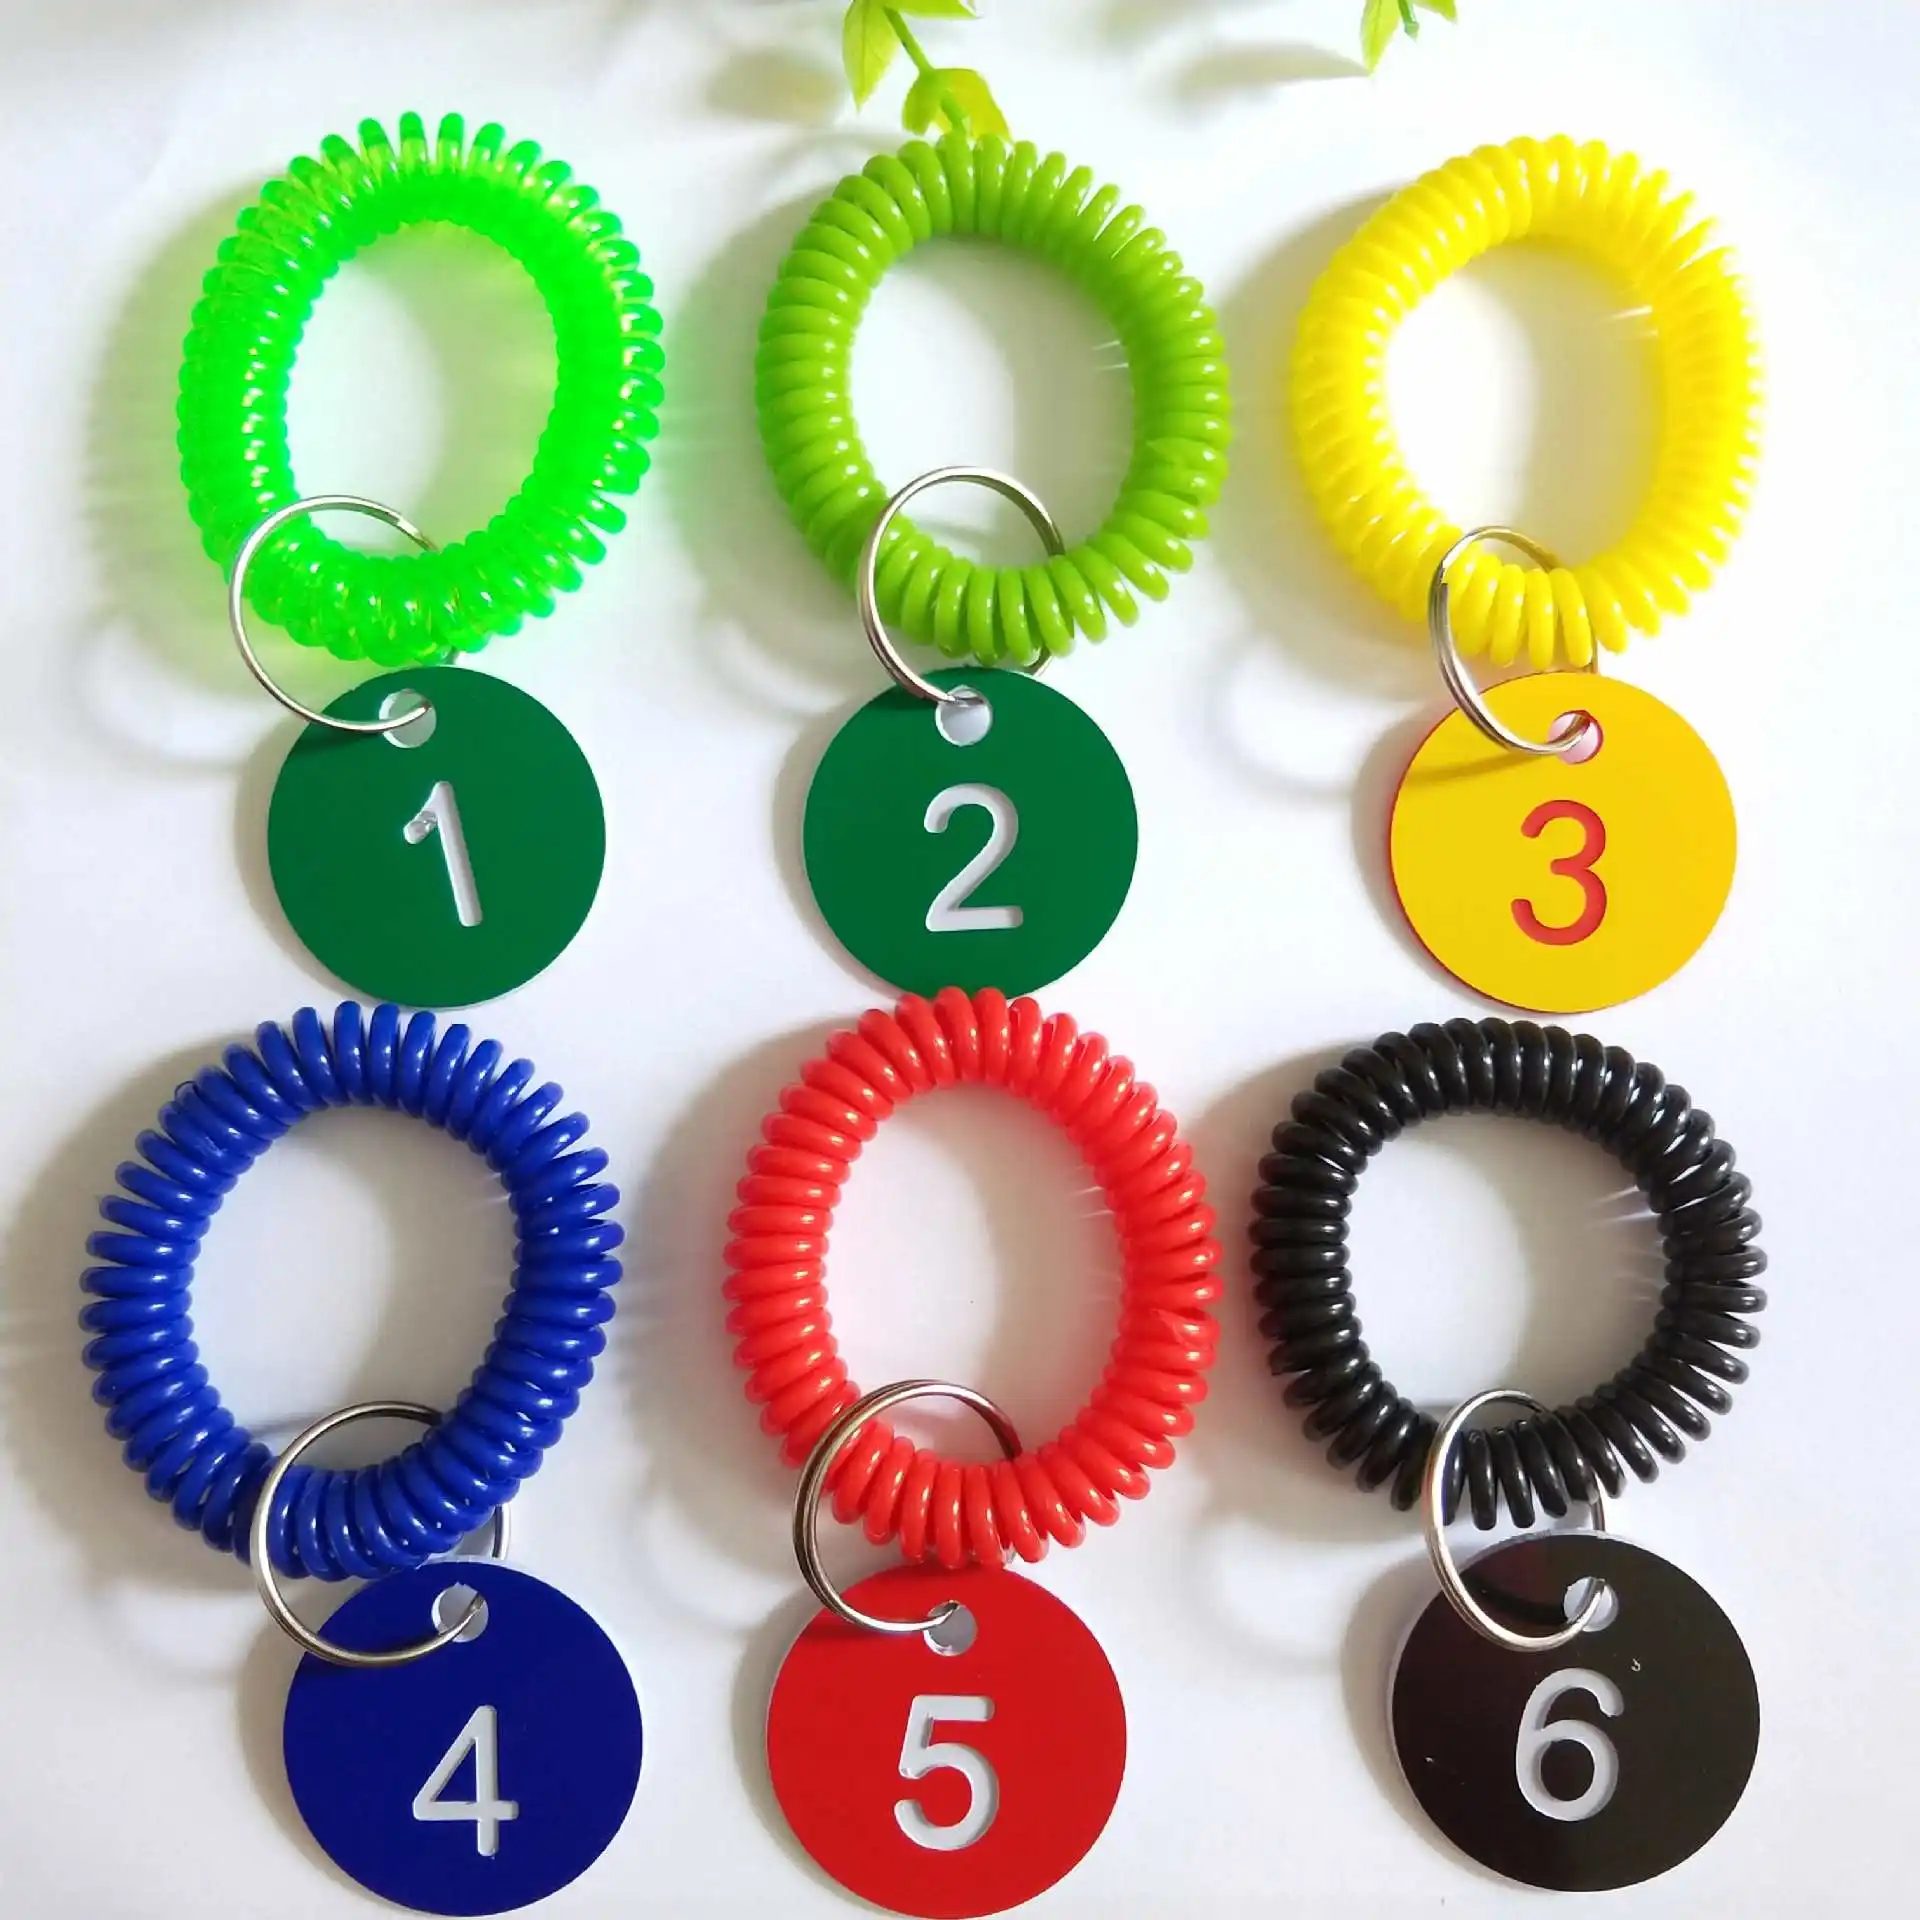 Aangepaste Kleurrijke Veerspoel Spiraal Polsband Met Nummer Tag Armband Polsbandje Sleutelhanger Intrekbare Ring Voor Supermarkt Hotel